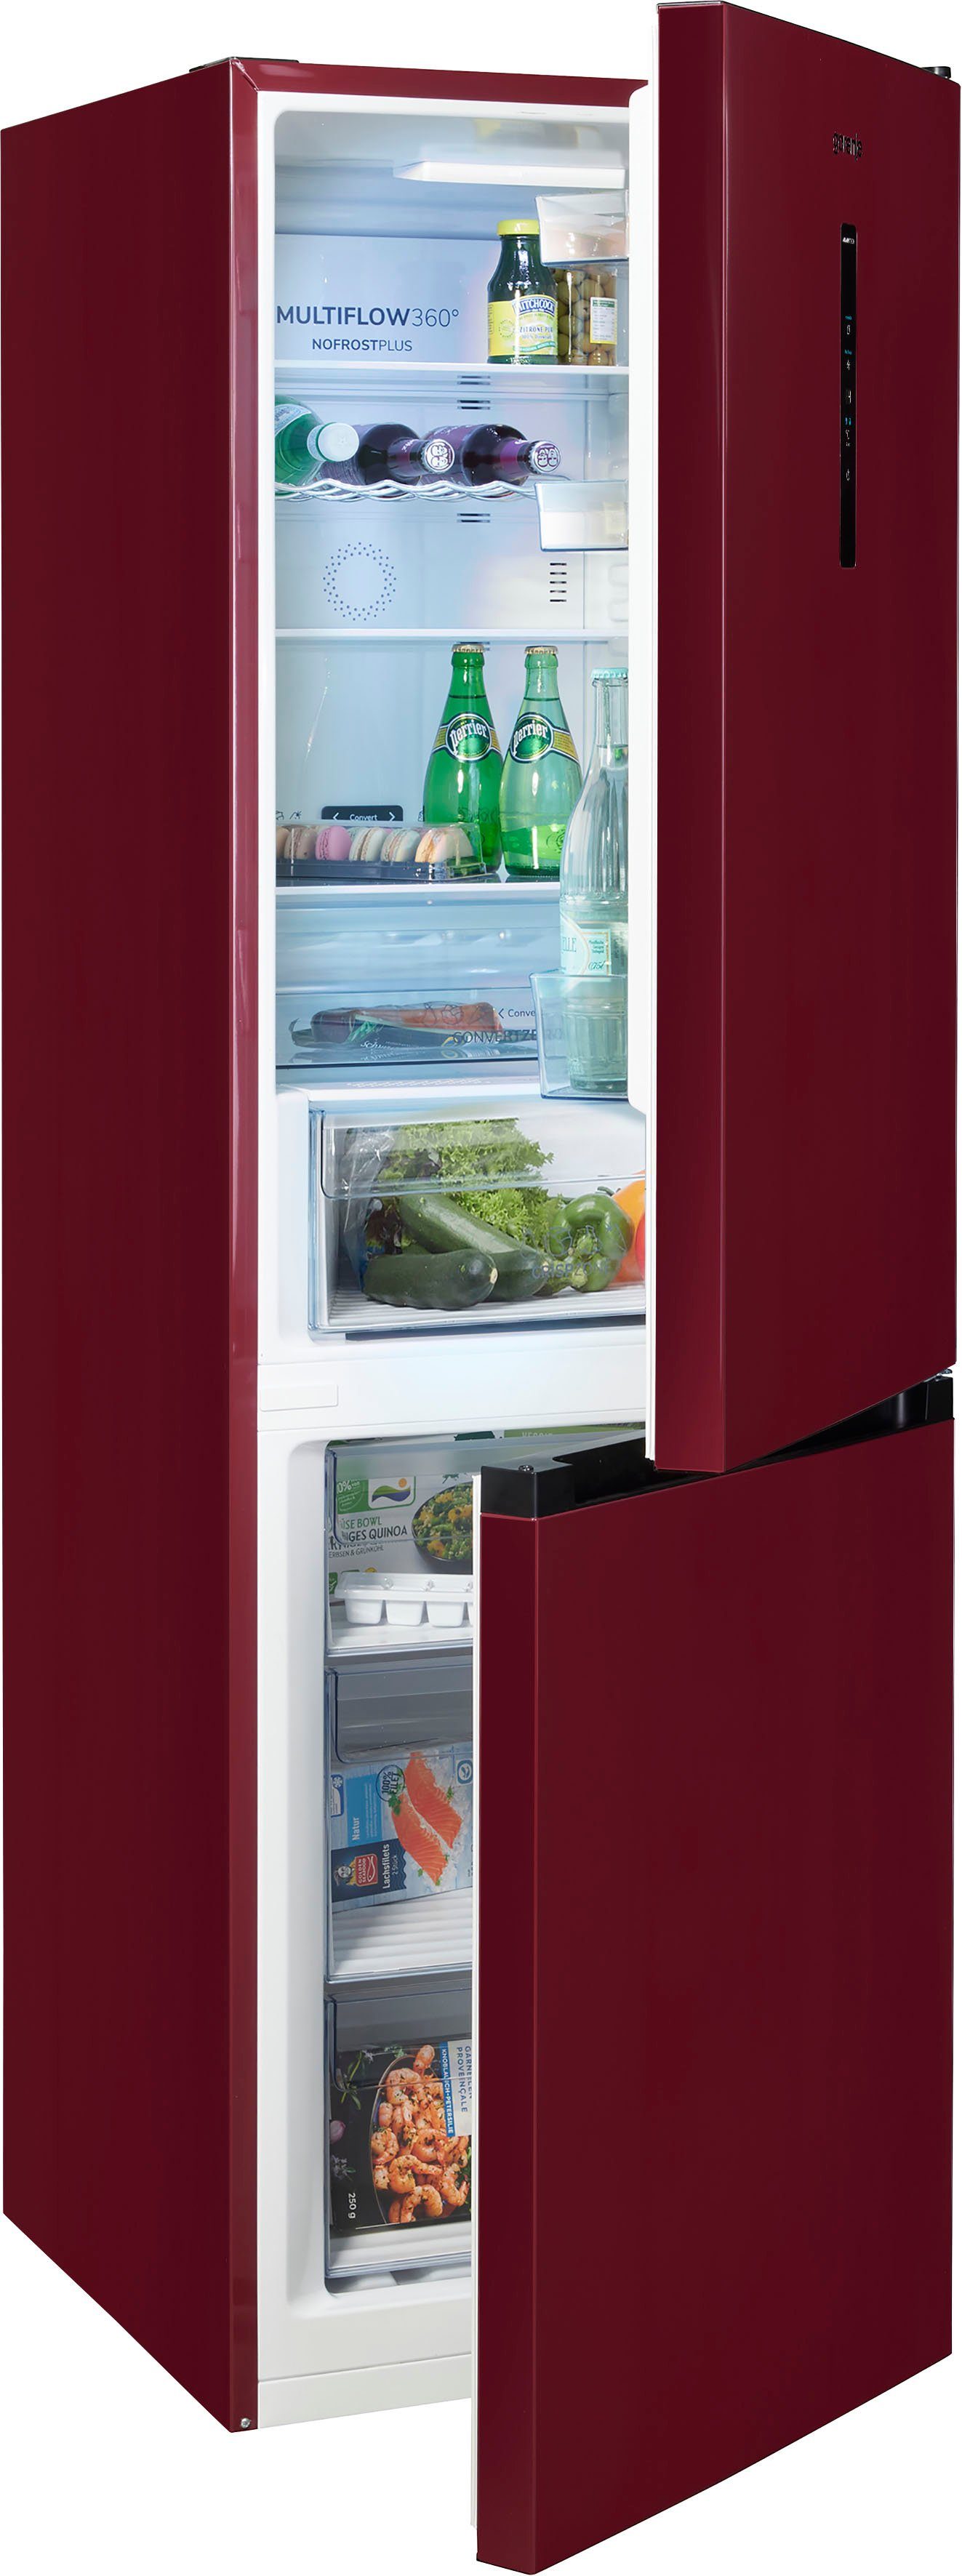 Hanseatic Retro-Kühlschränke online kaufen